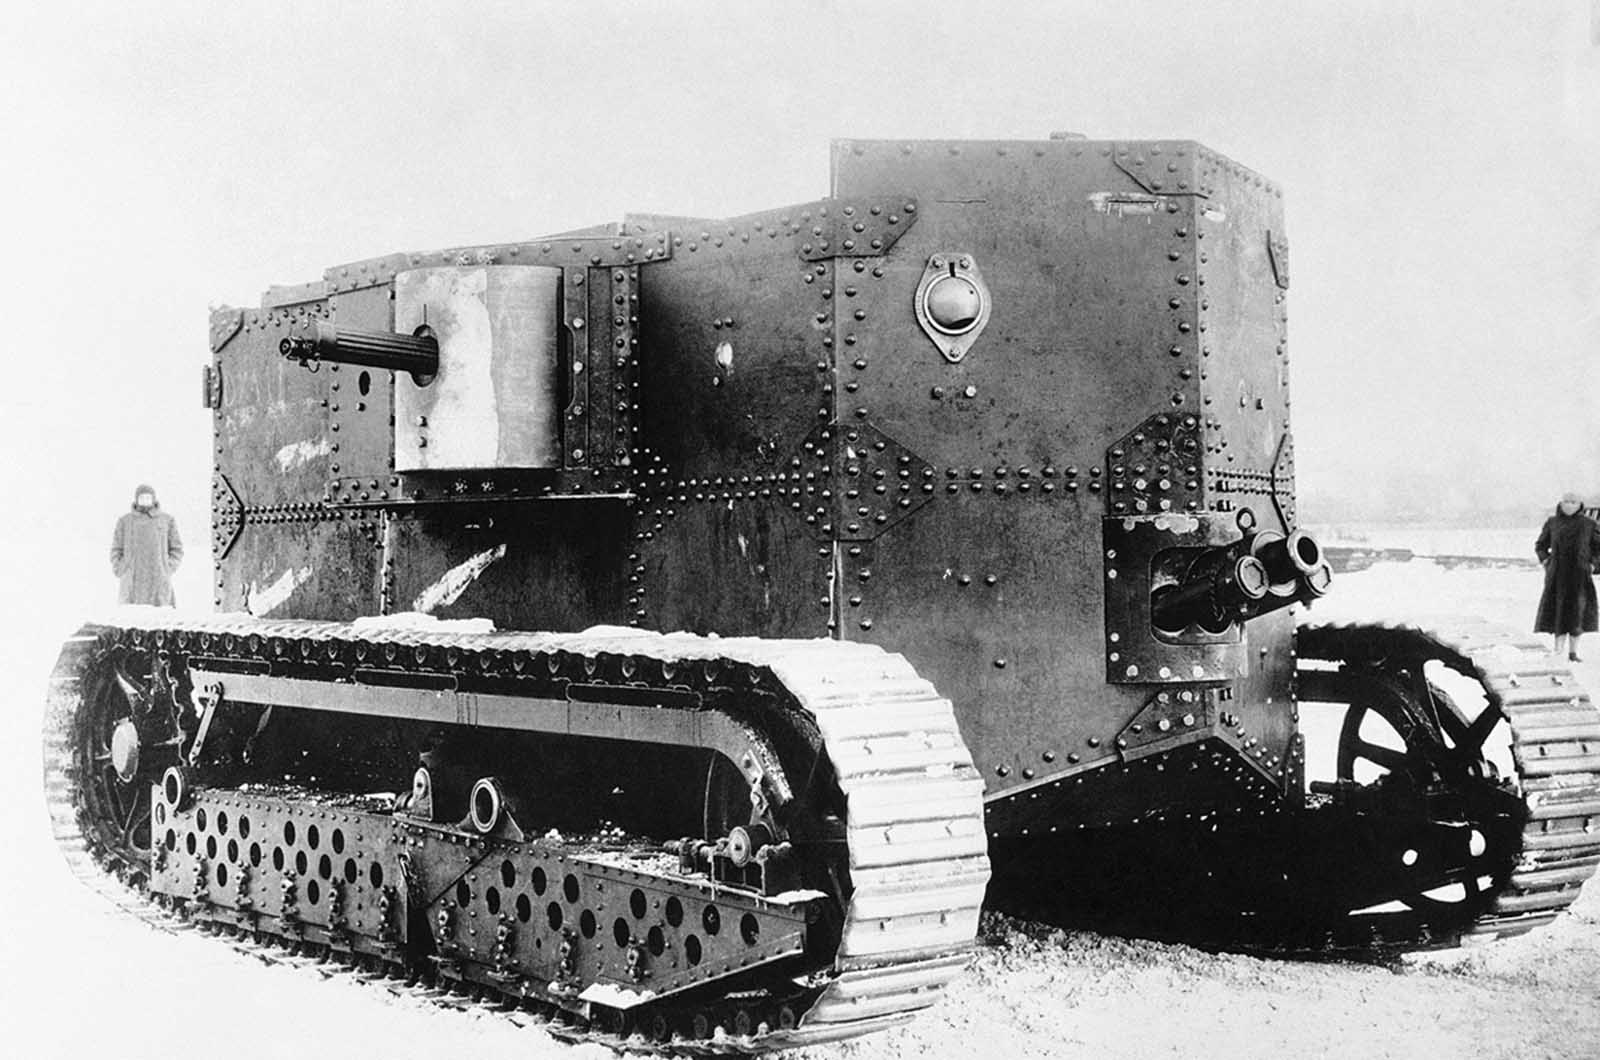 一战时期新式武器老照片,美国首款坦克又丑又笨重,效率很低